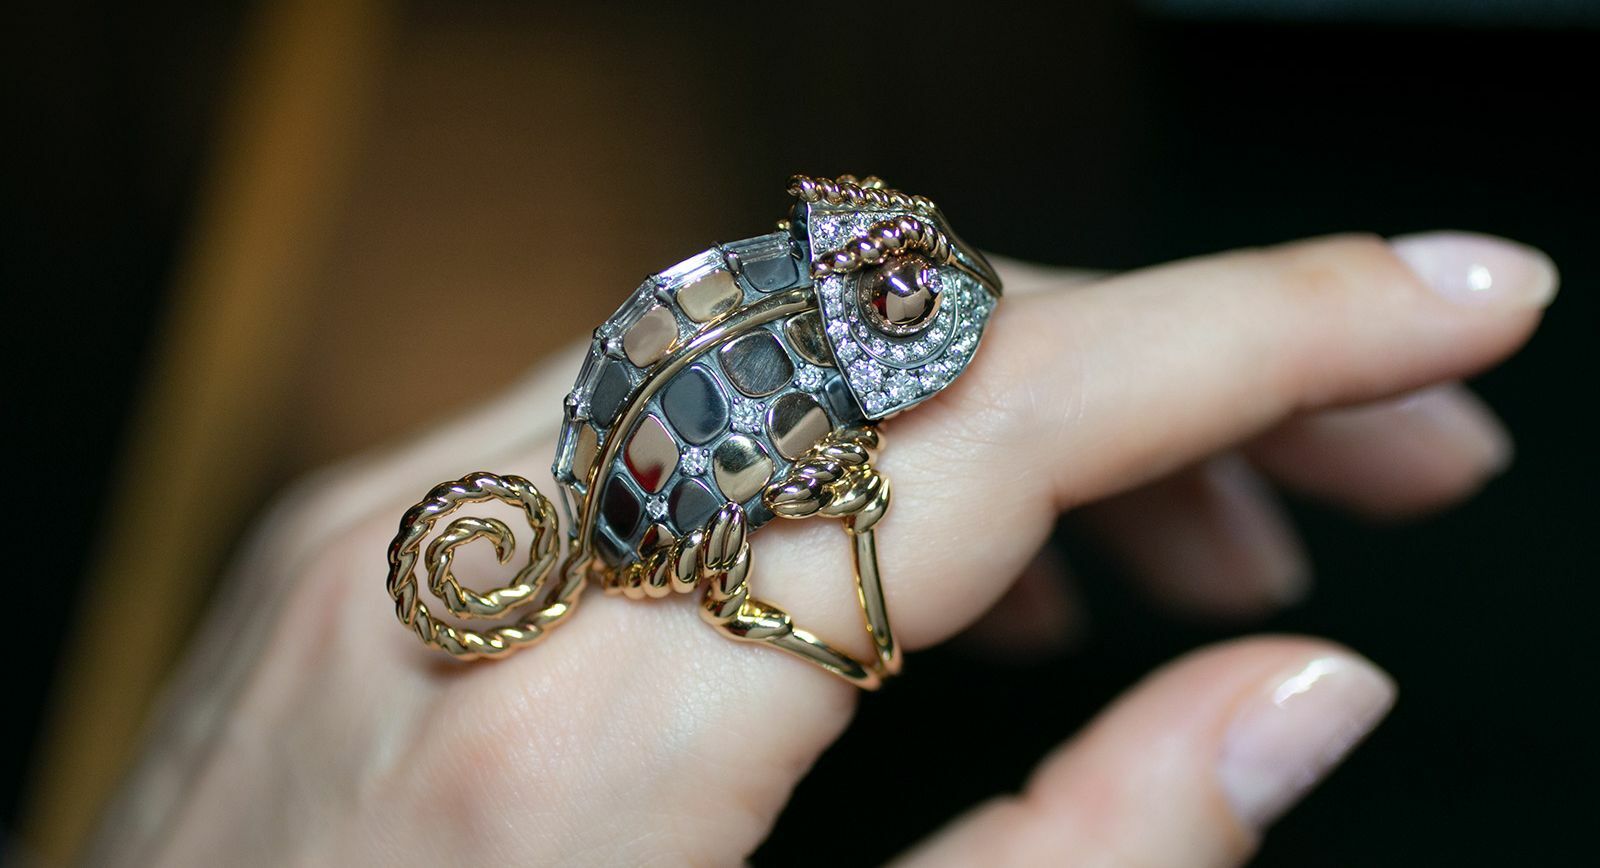 Кольцо Elie Top Chameleon из коллекции Magica Naturae